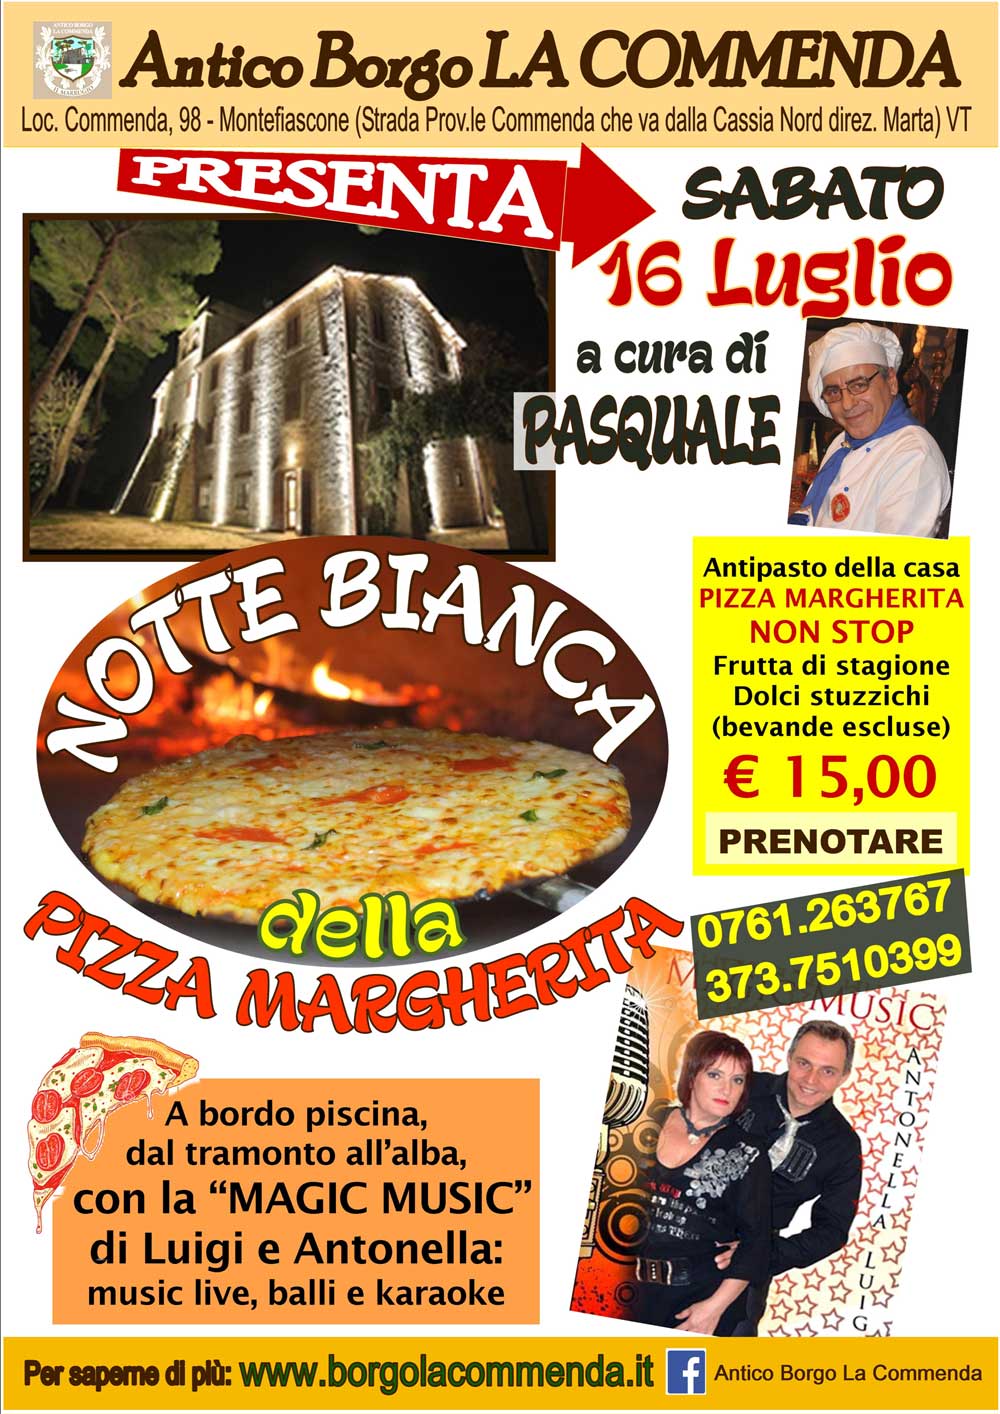 (Italiano) La notte bianca della Pizza margherita sabato 16 luglio